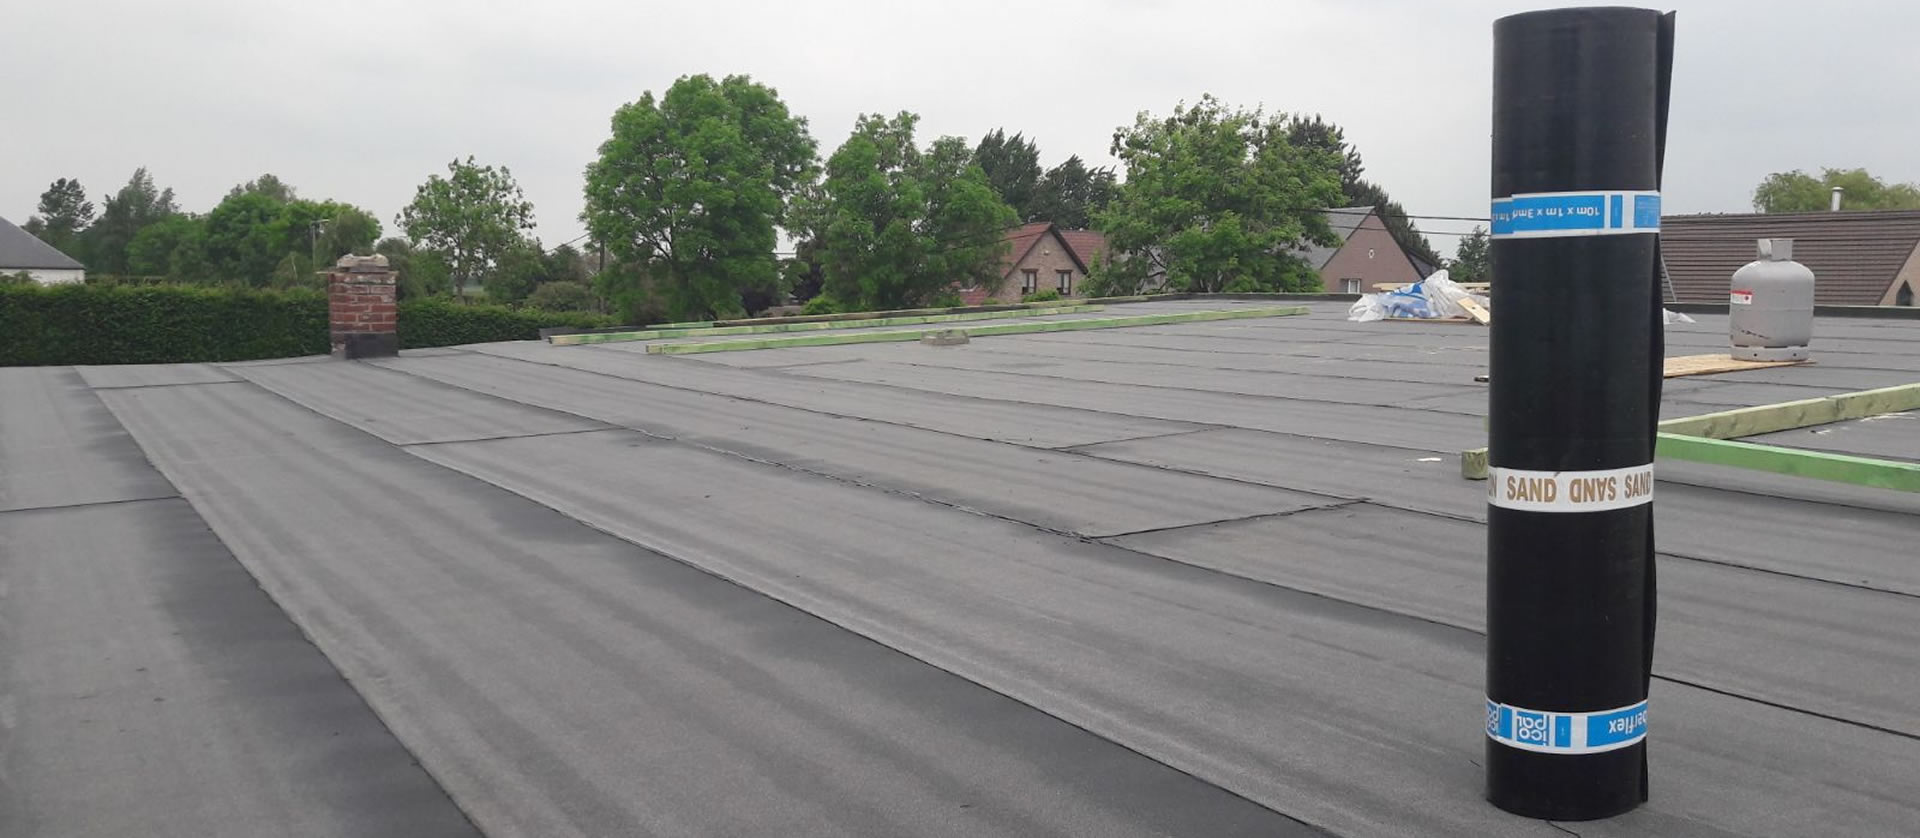 dc-dakwerken-limburg-roofing-bitumen